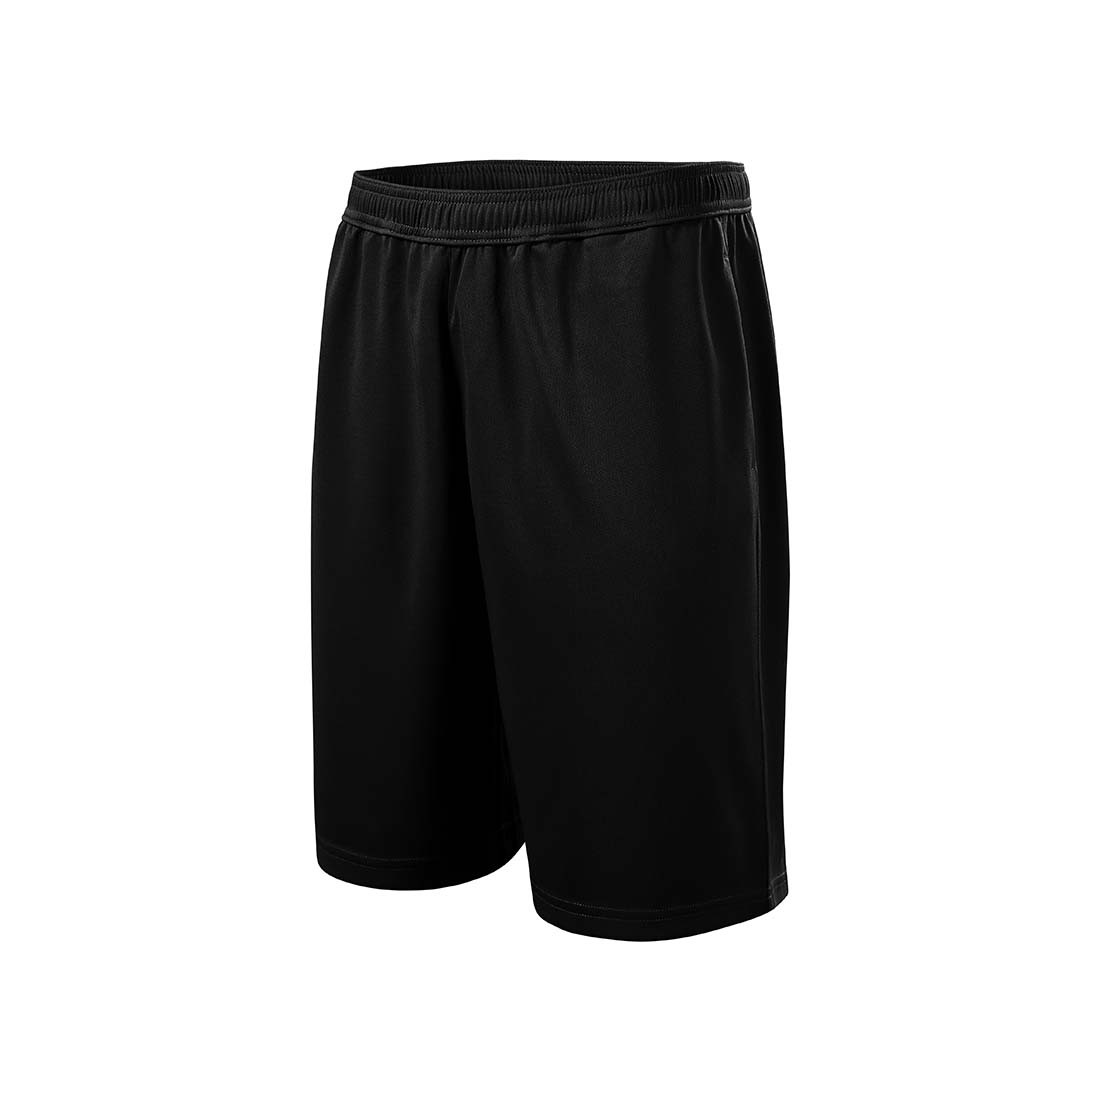 Pantalones cortos para hombres - Ropa de protección